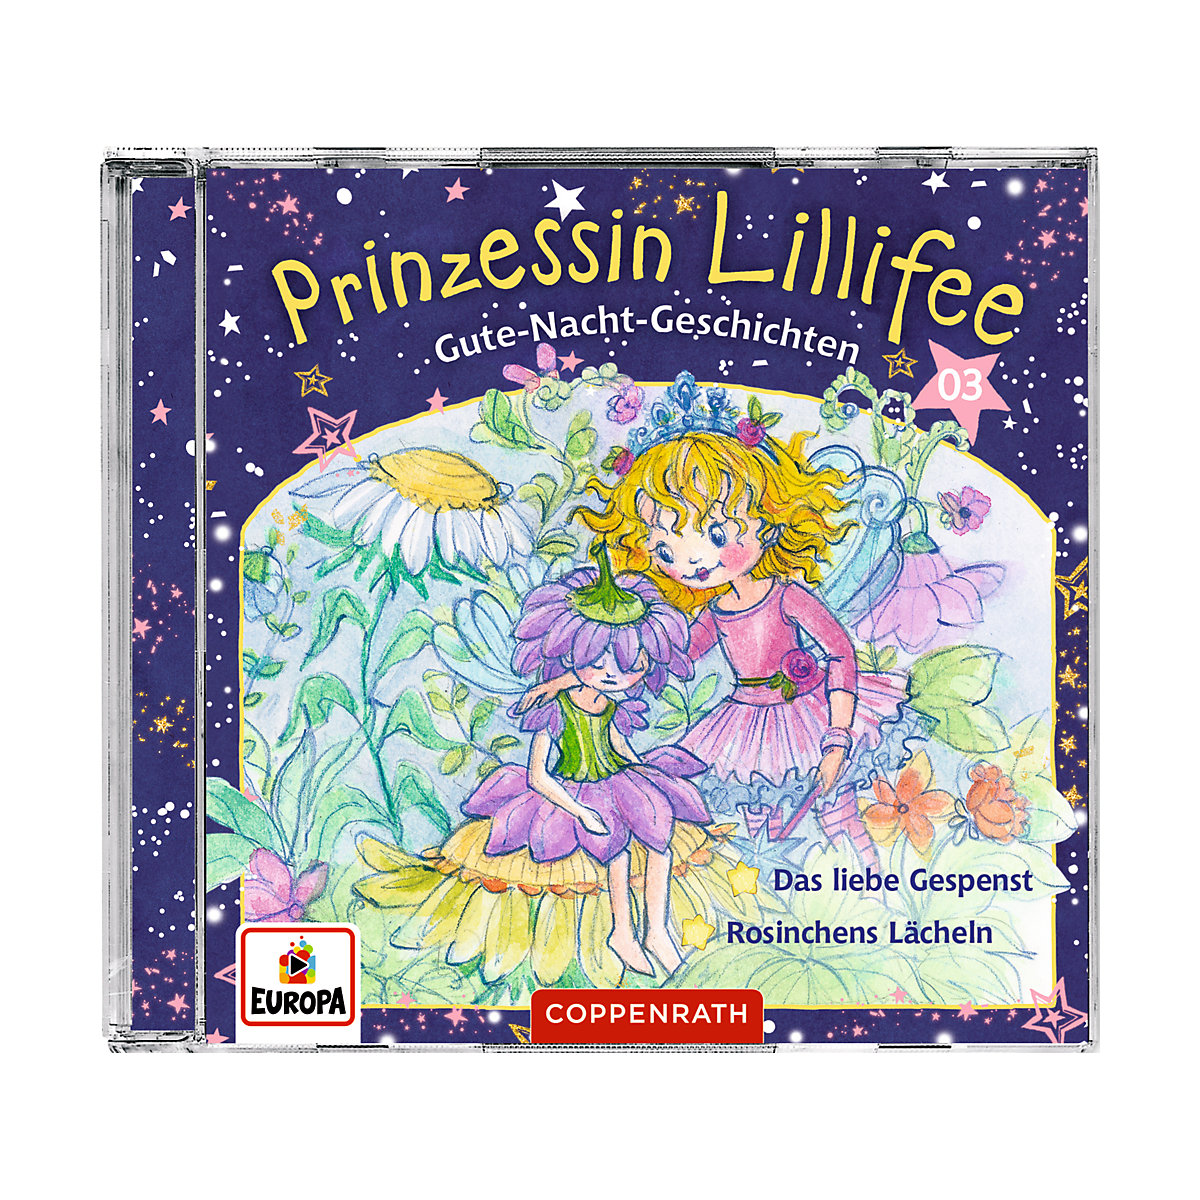 CD Gute-Nacht-Geschichten mit Prinzessin Lillifee (3)